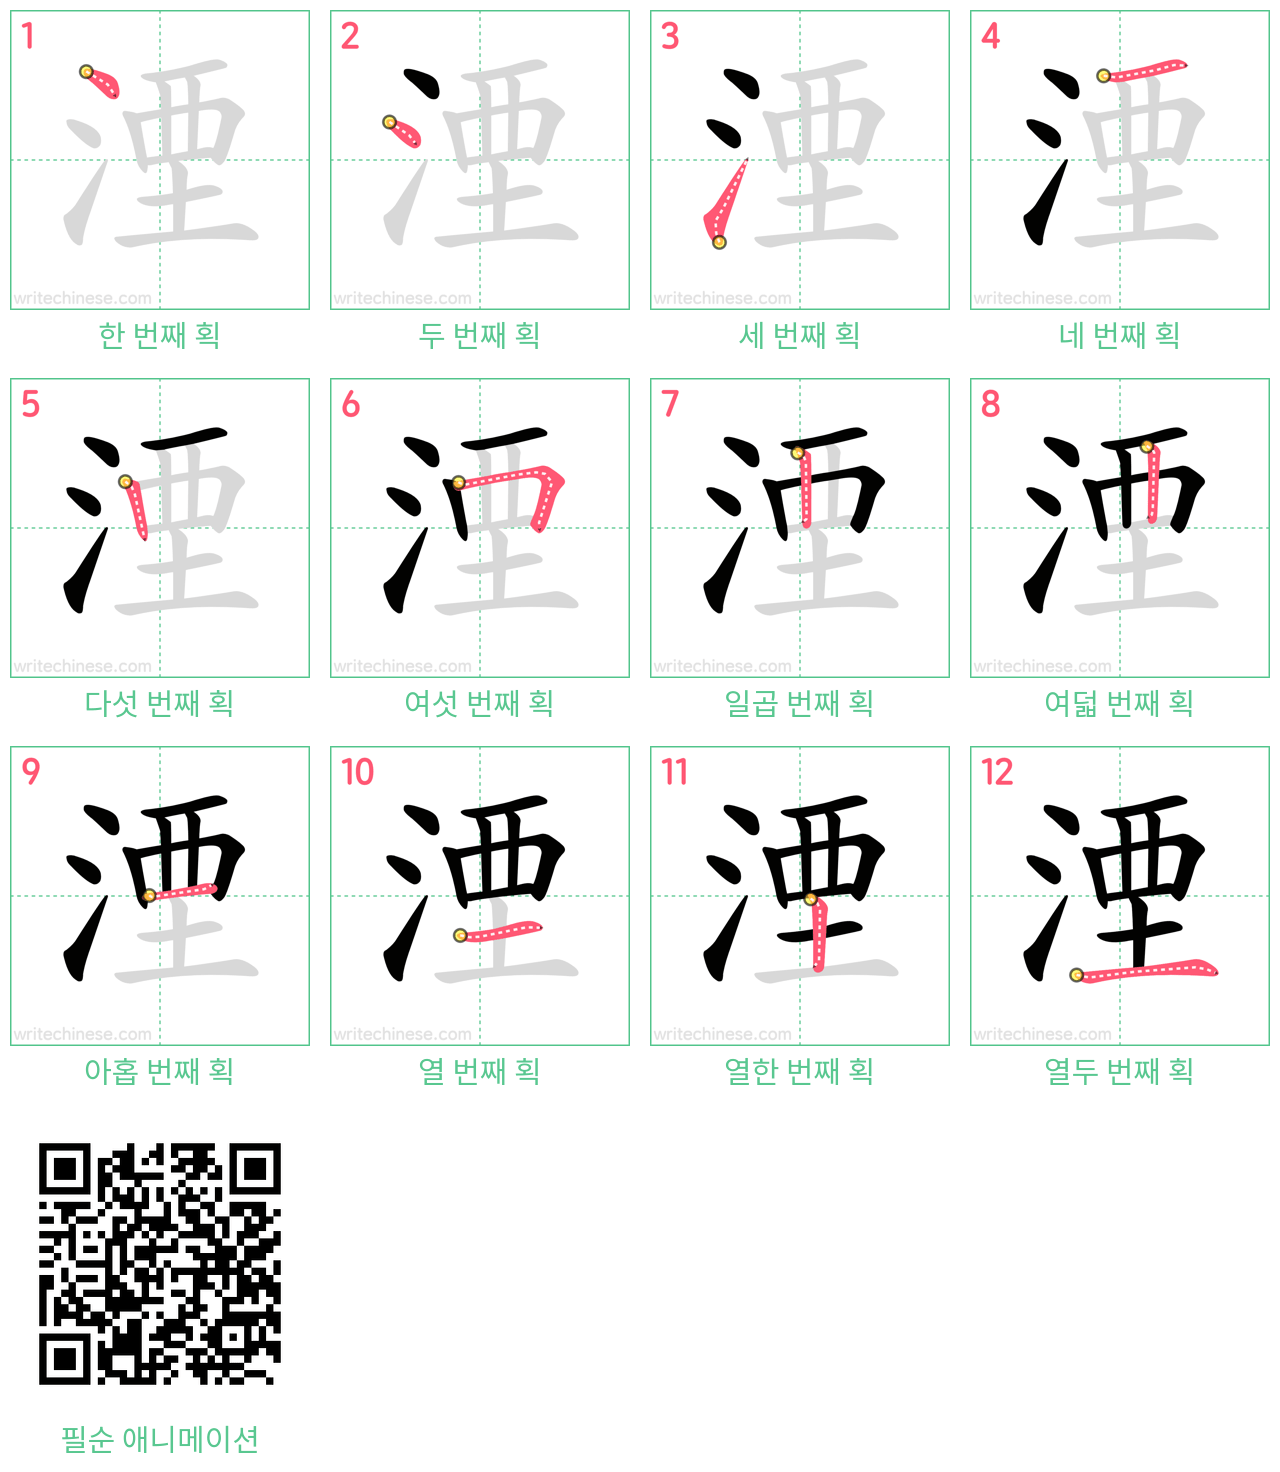 湮 step-by-step stroke order diagrams